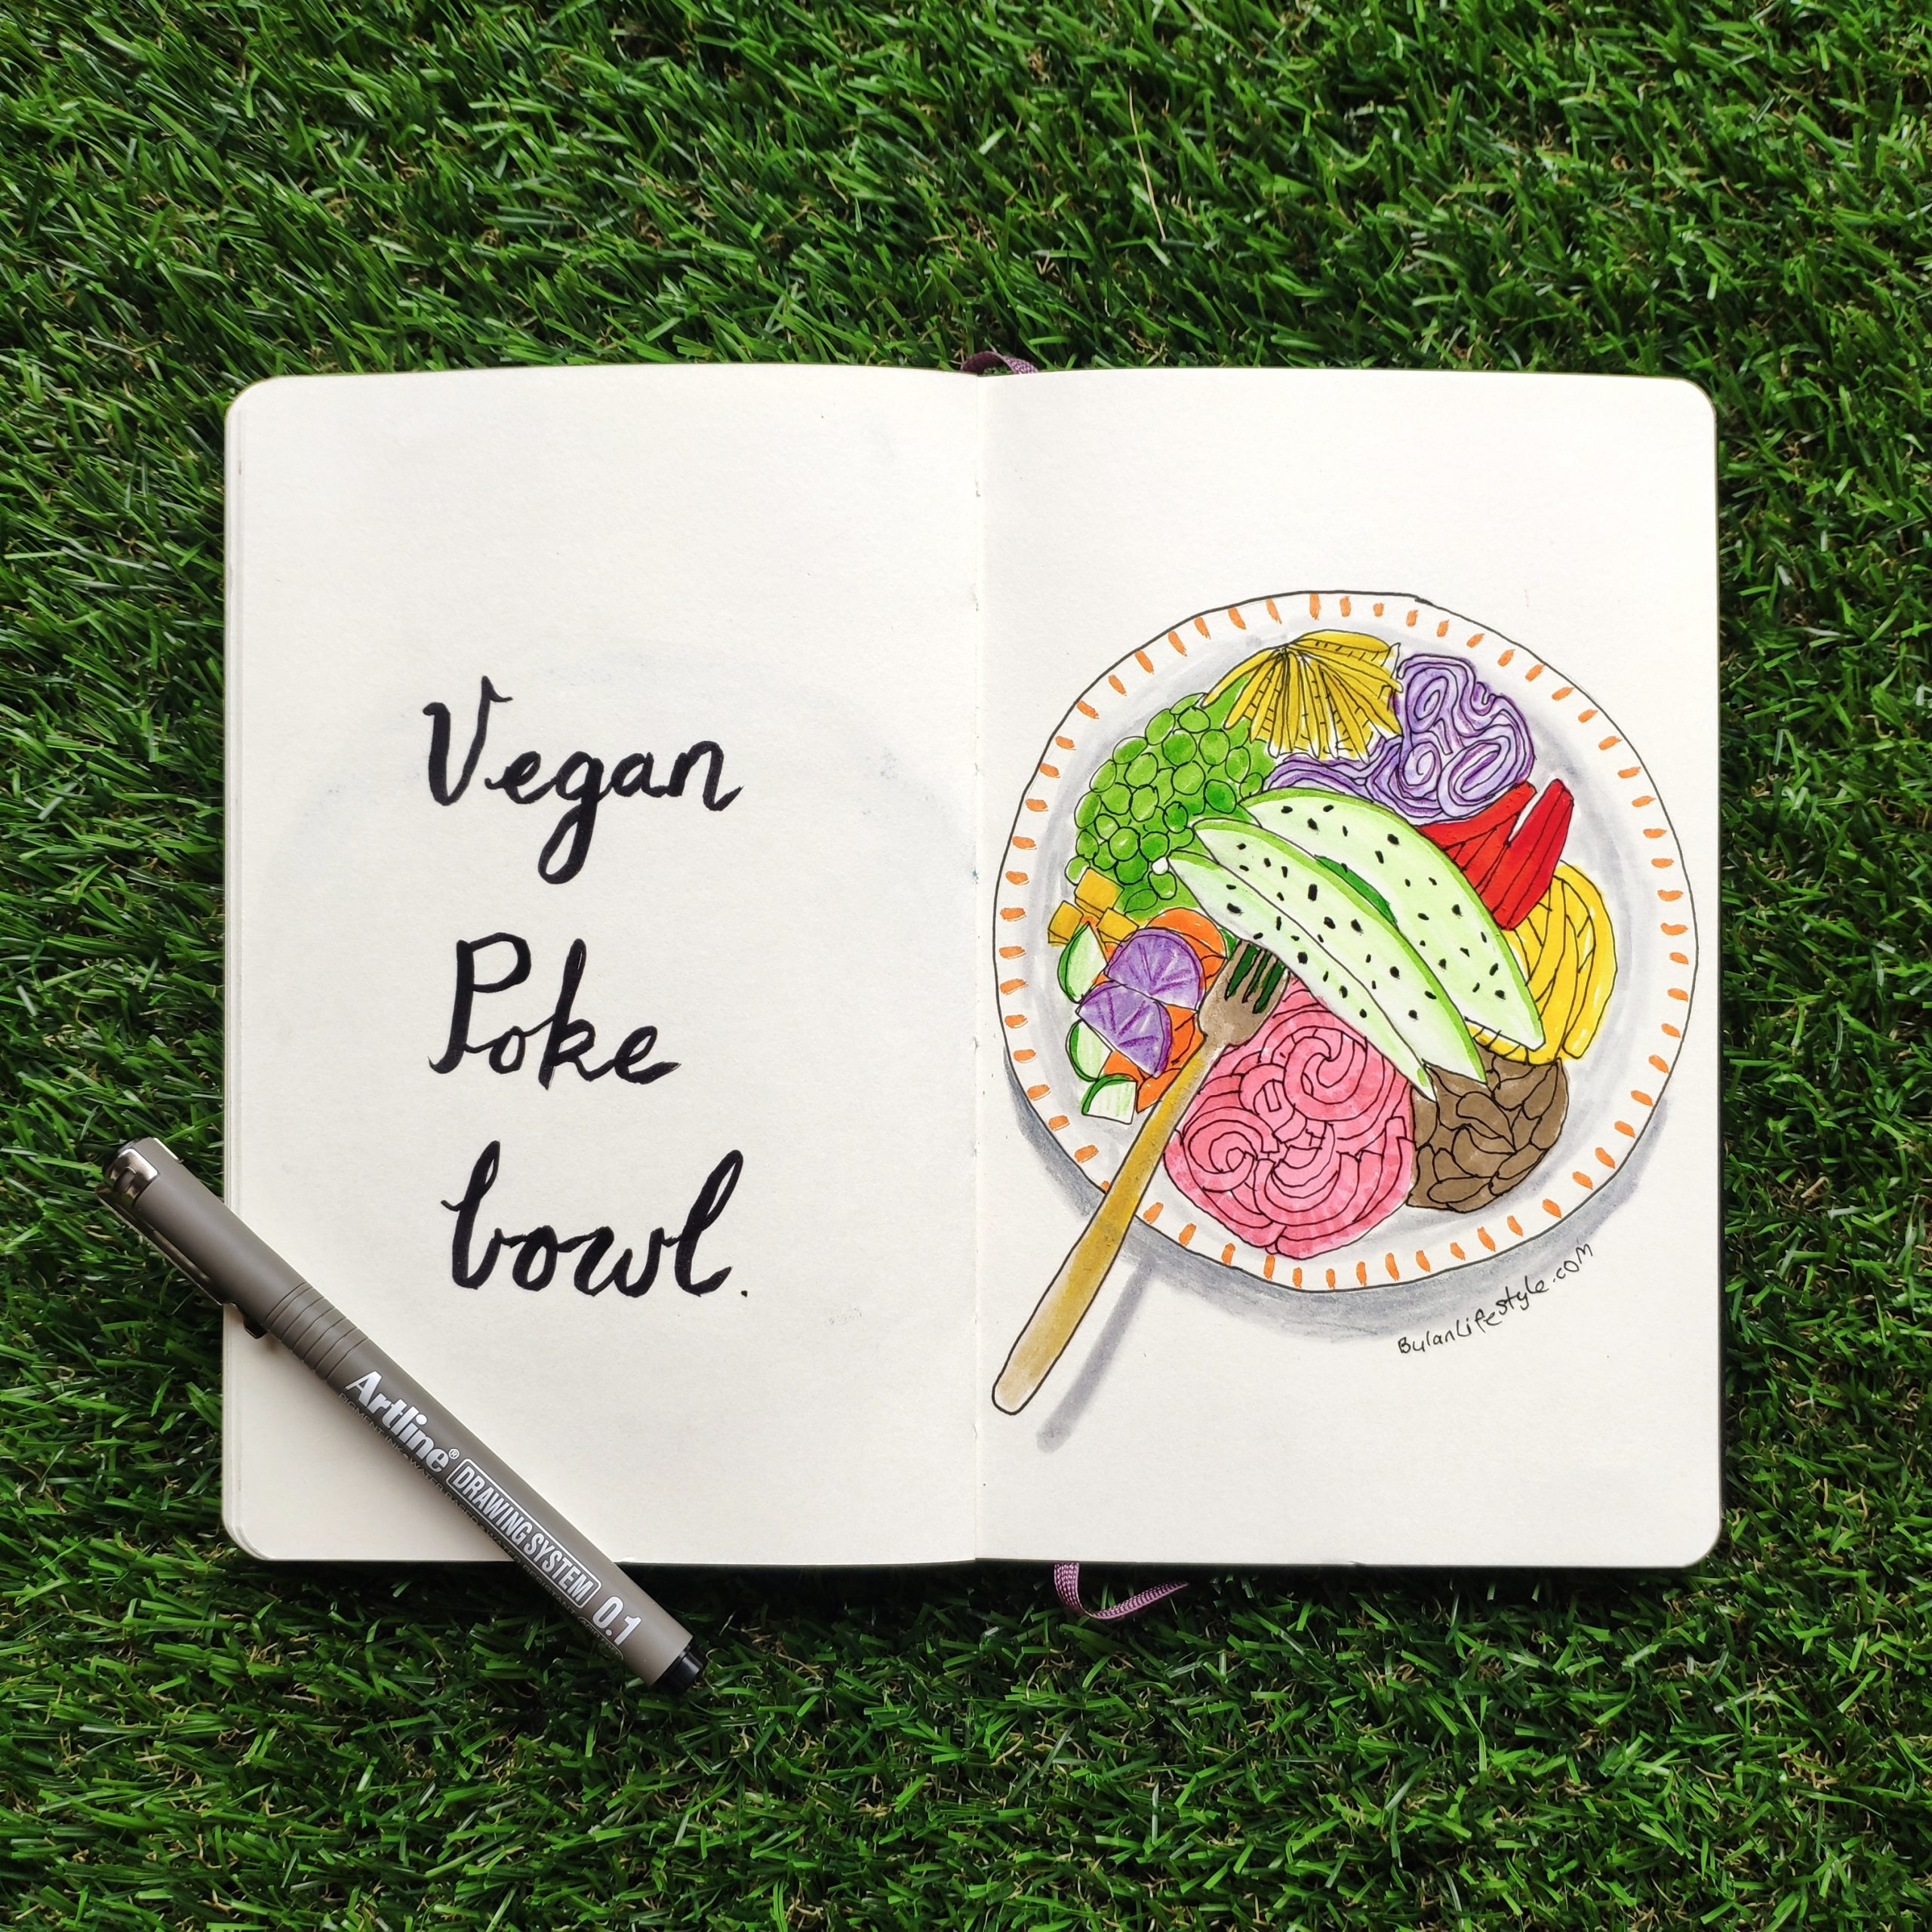 Vegan poke bowl